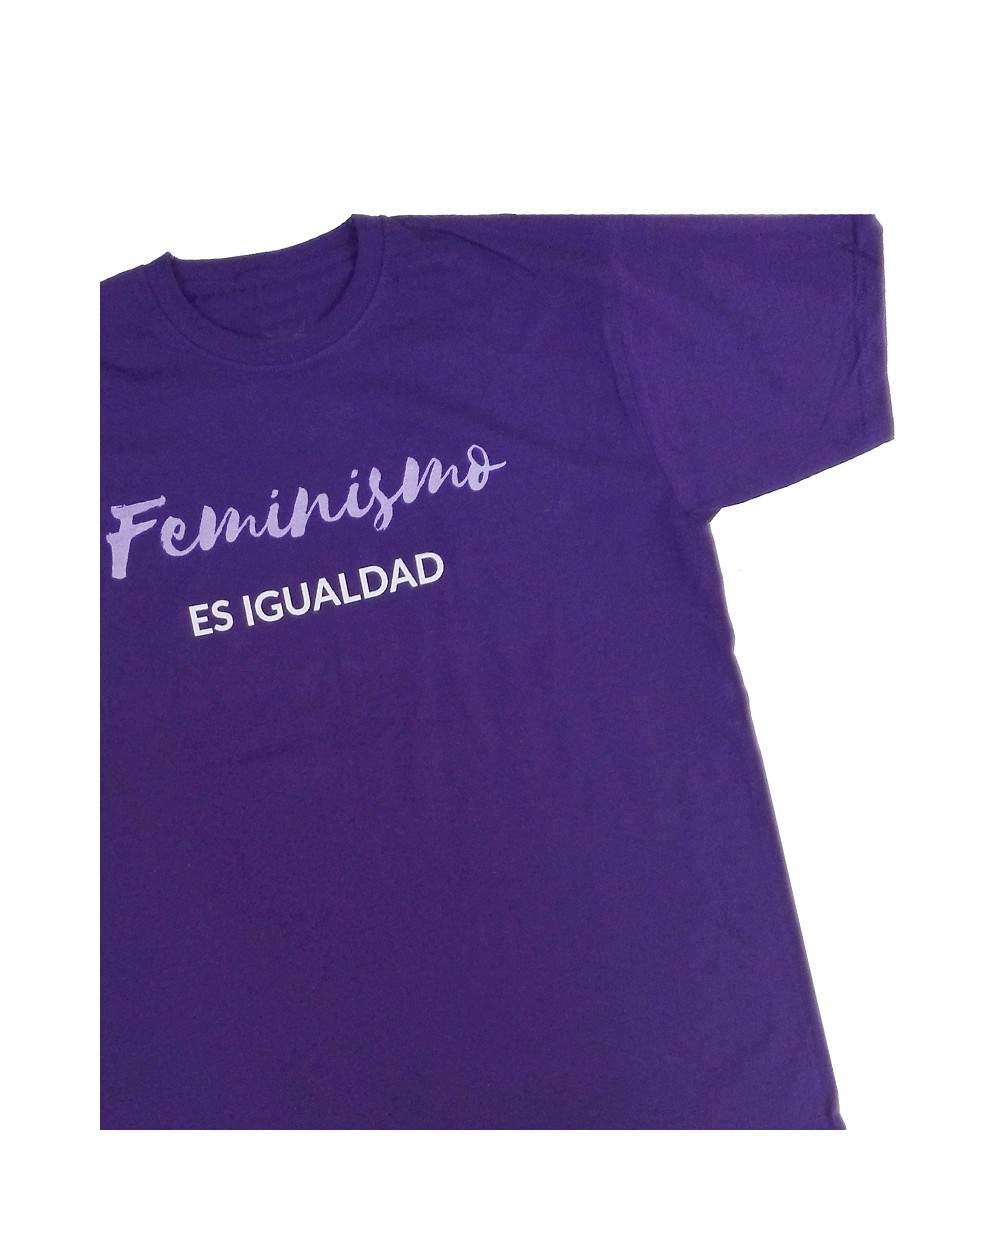 Camiseta feminista para hombre morada